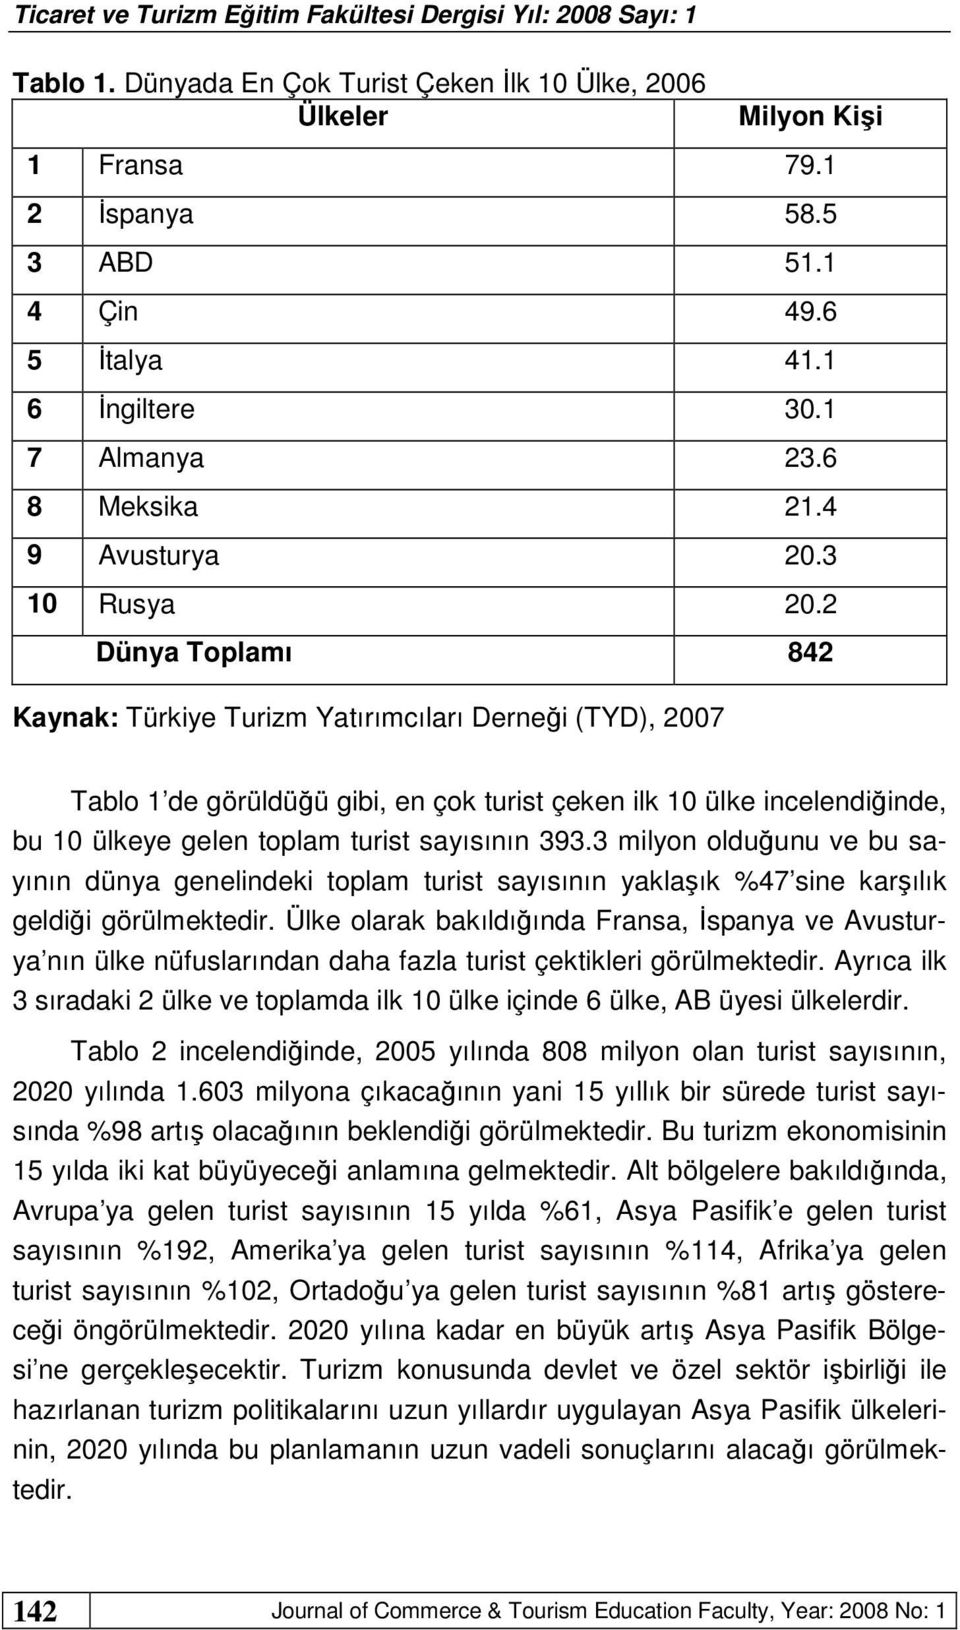 2 Dünya Toplamı 842 Kaynak: Türkiye Turizm Yatırımcıları Derneği (TYD), 2007 Tablo 1 de görüldüğü gibi, en çok turist çeken ilk 10 ülke incelendiğinde, bu 10 ülkeye gelen toplam turist sayısının 393.